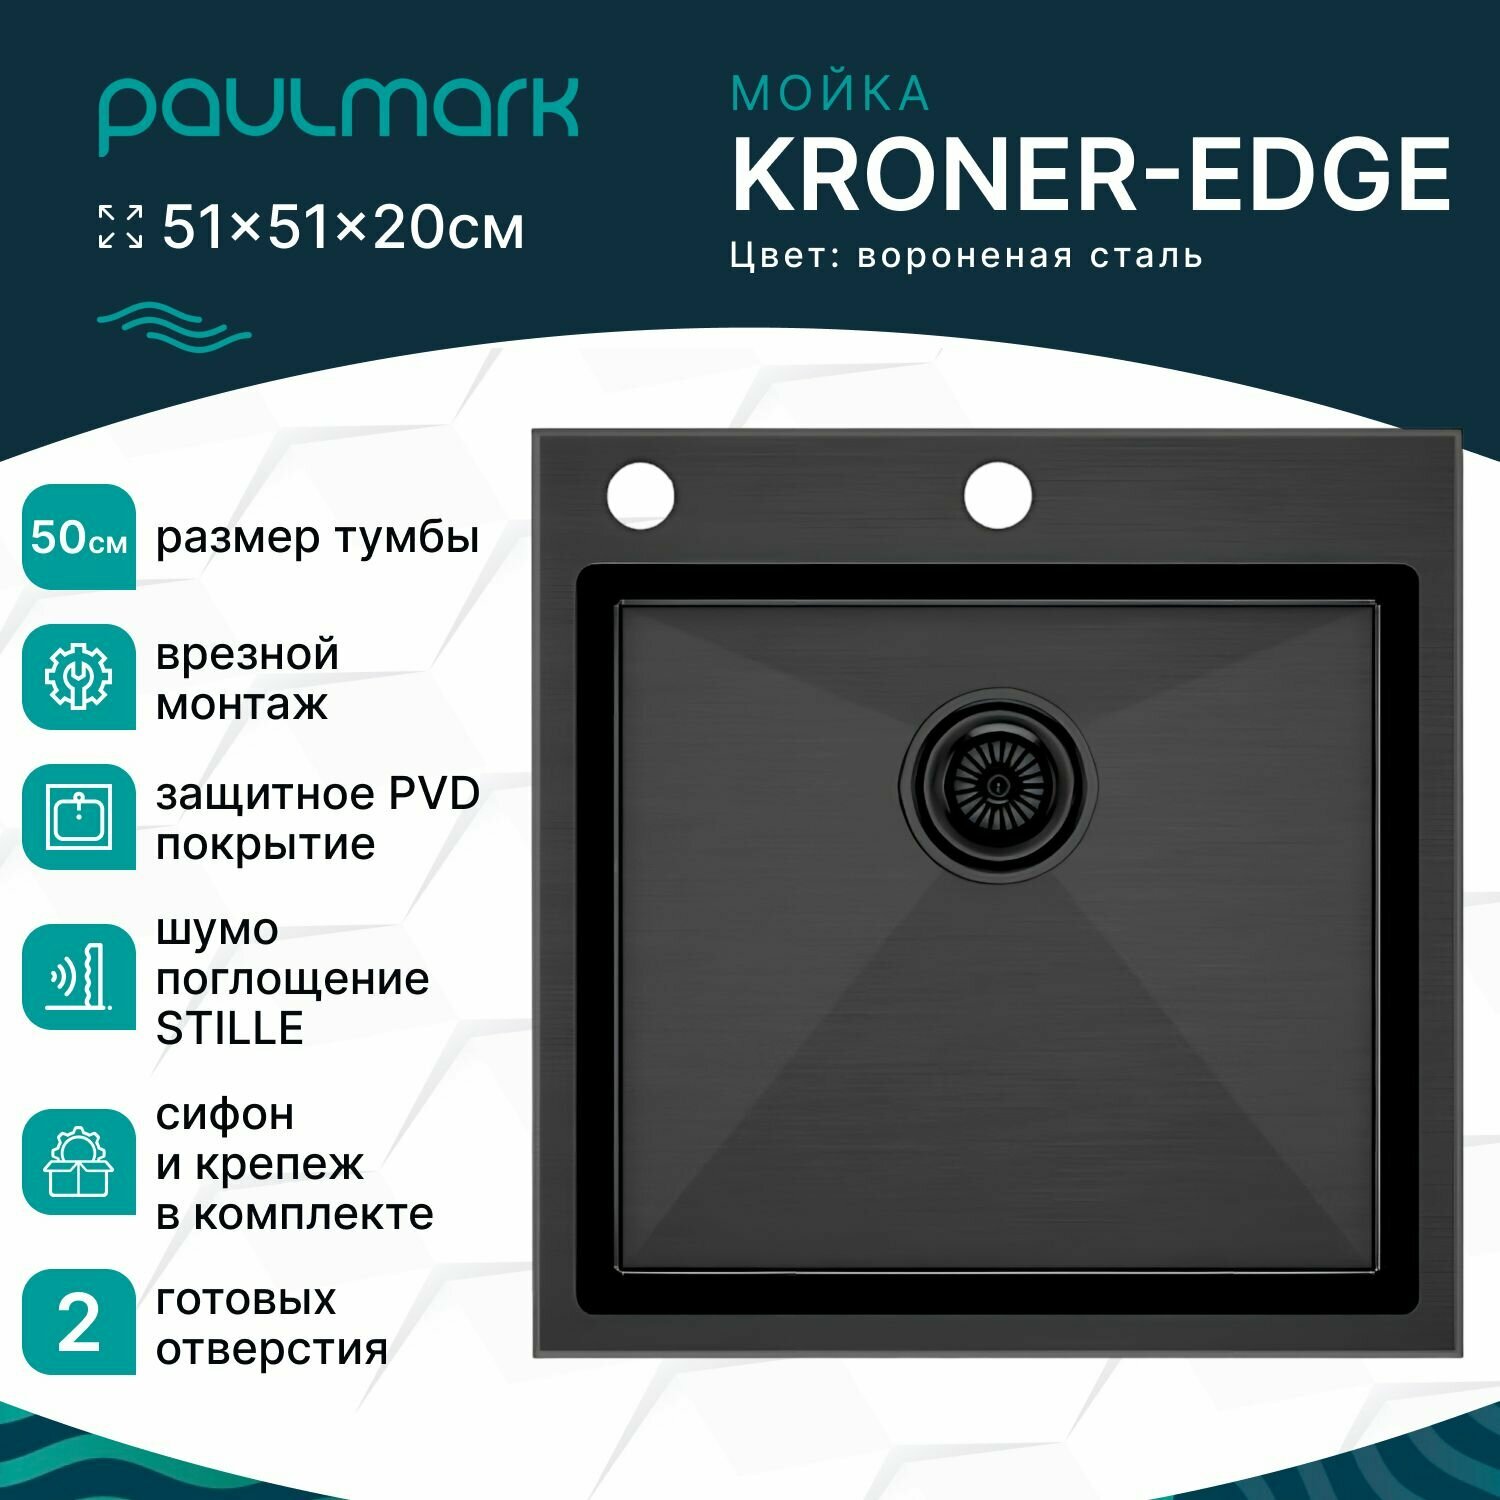 Мойка для кухни врезная из нержавеющей стали Paulmark KRONER-EDGE, 510х510 мм, PVD покрытие, 2 отверстия: под смеситель и дозатор, цвет вороненая сталь, PM775151-GM